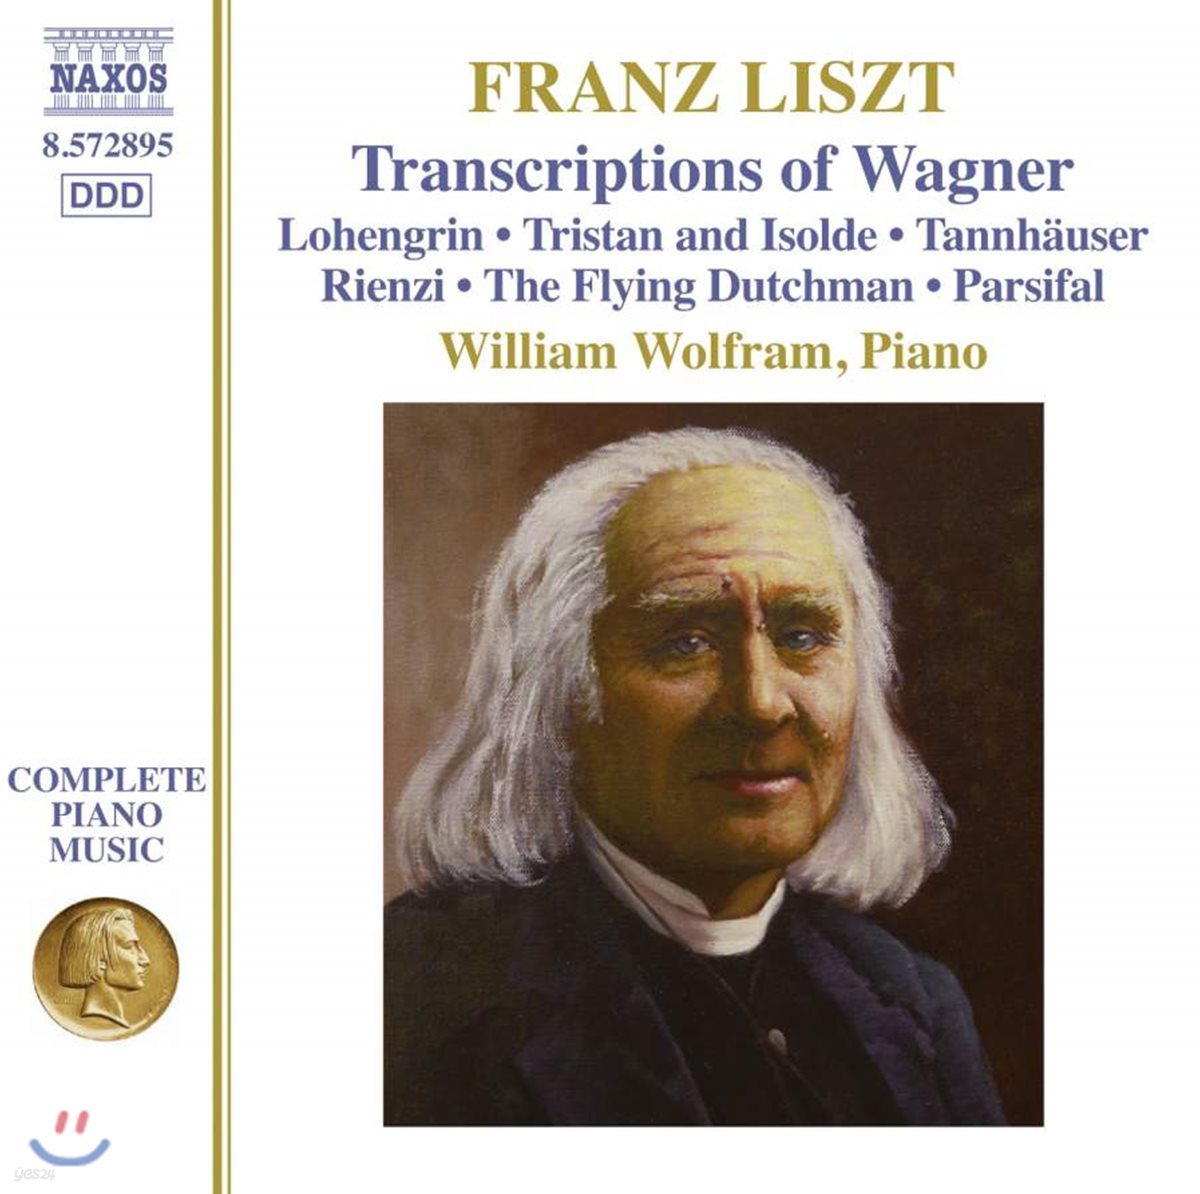 William Wolfram 리스트가 편곡한 바그너 - 로엔그린, 탄호이저, 파르지팔, 트리스탄 [피아노 독주집] (Liszt: Complete Piano Music Volume 36)